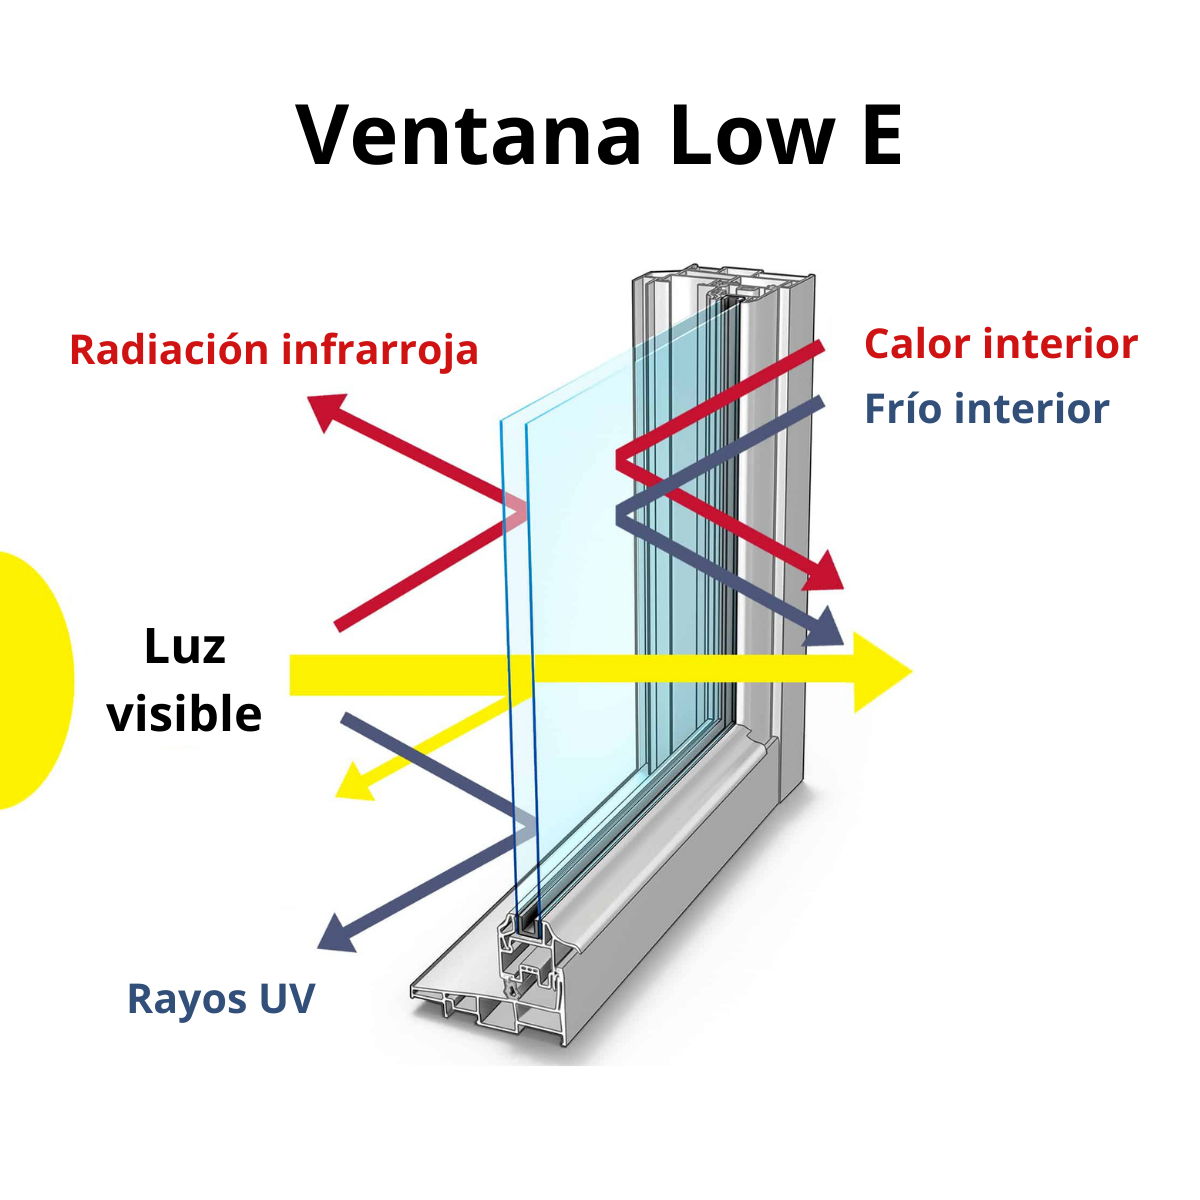 ventana-low-e-emisividad-1